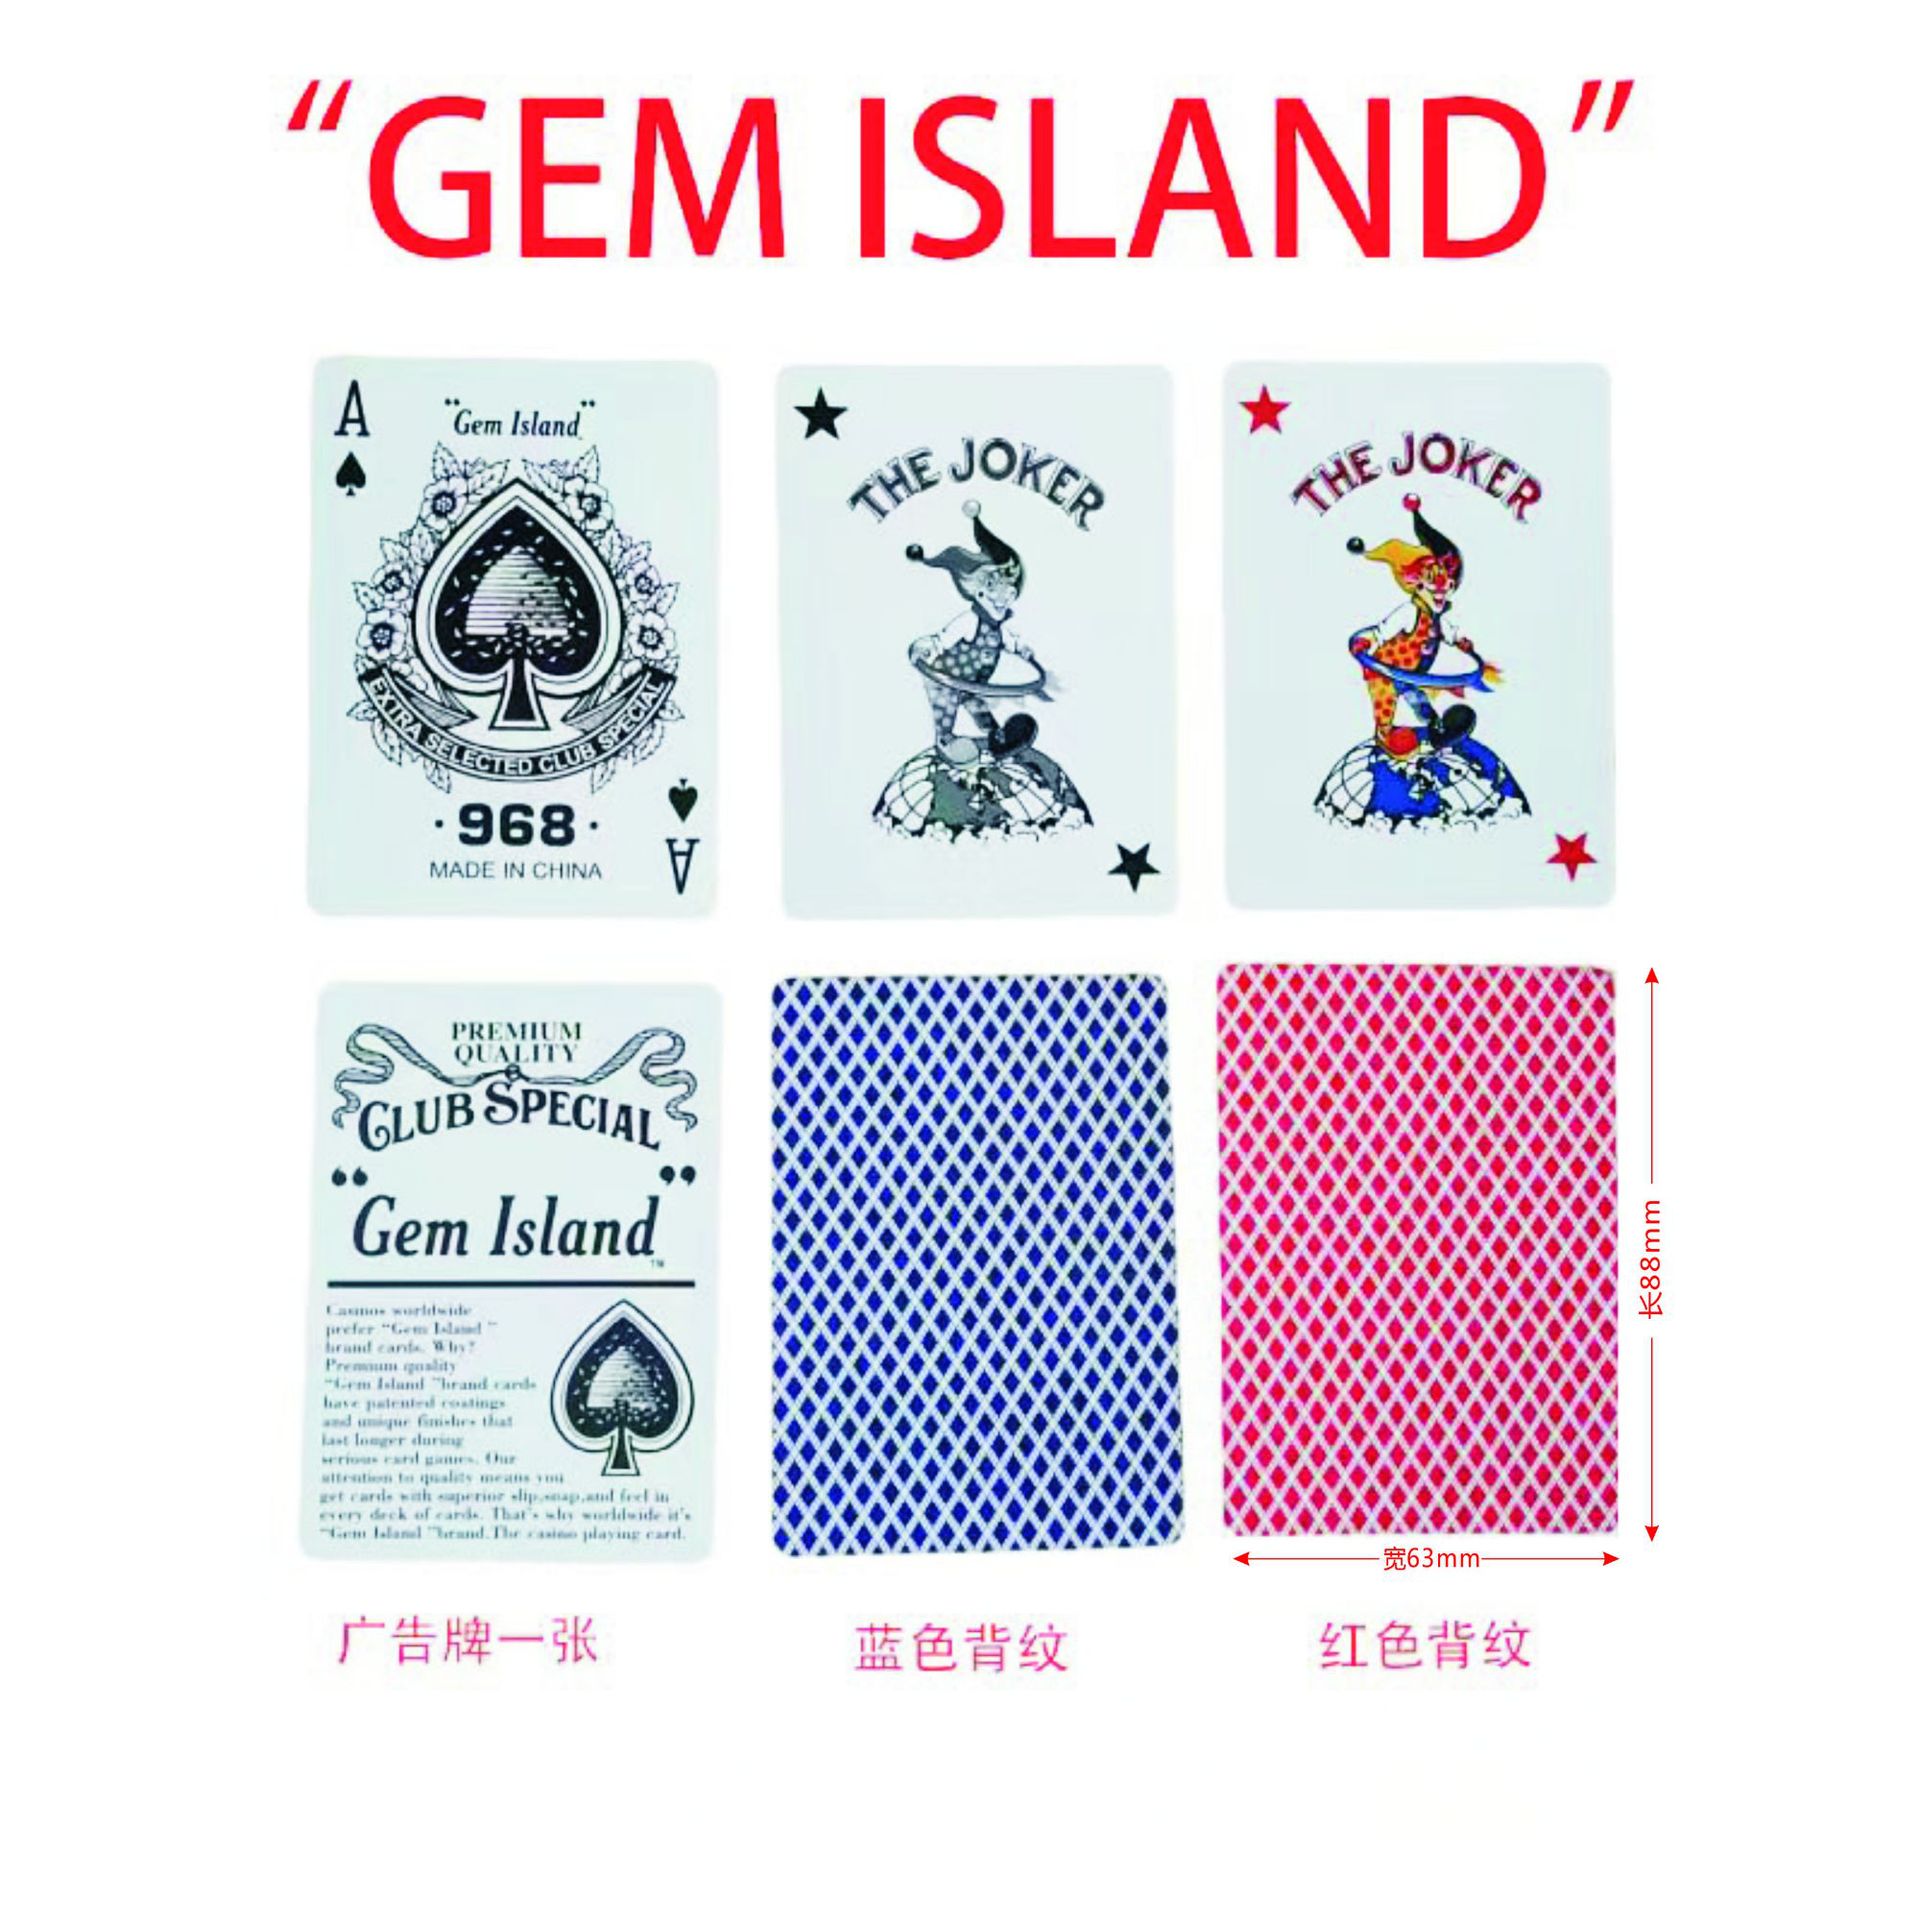 小蜜蜂品质Gem Island 扑克现货赌场质量棋牌室俱乐部专用扑克详情图2